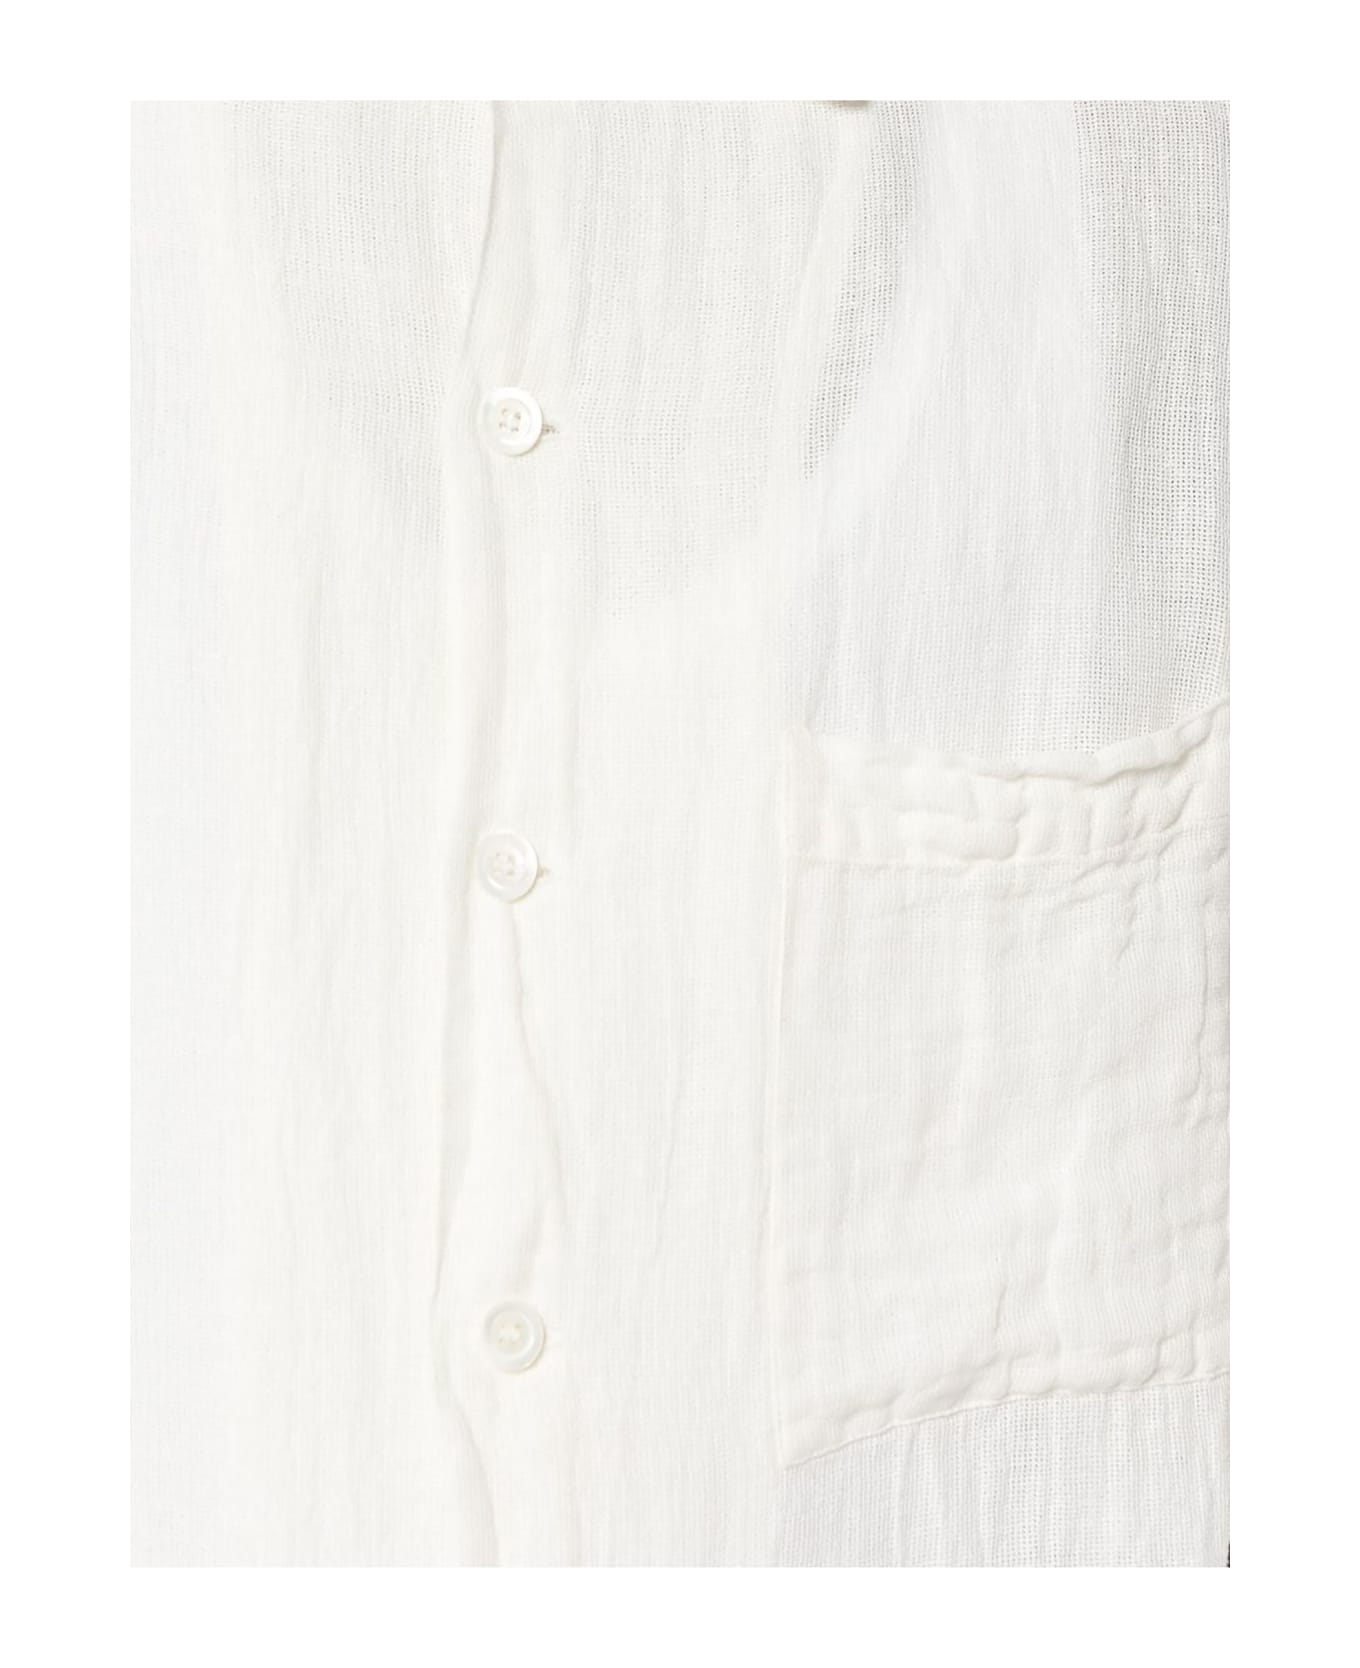 Barena Shirts White - White シャツ